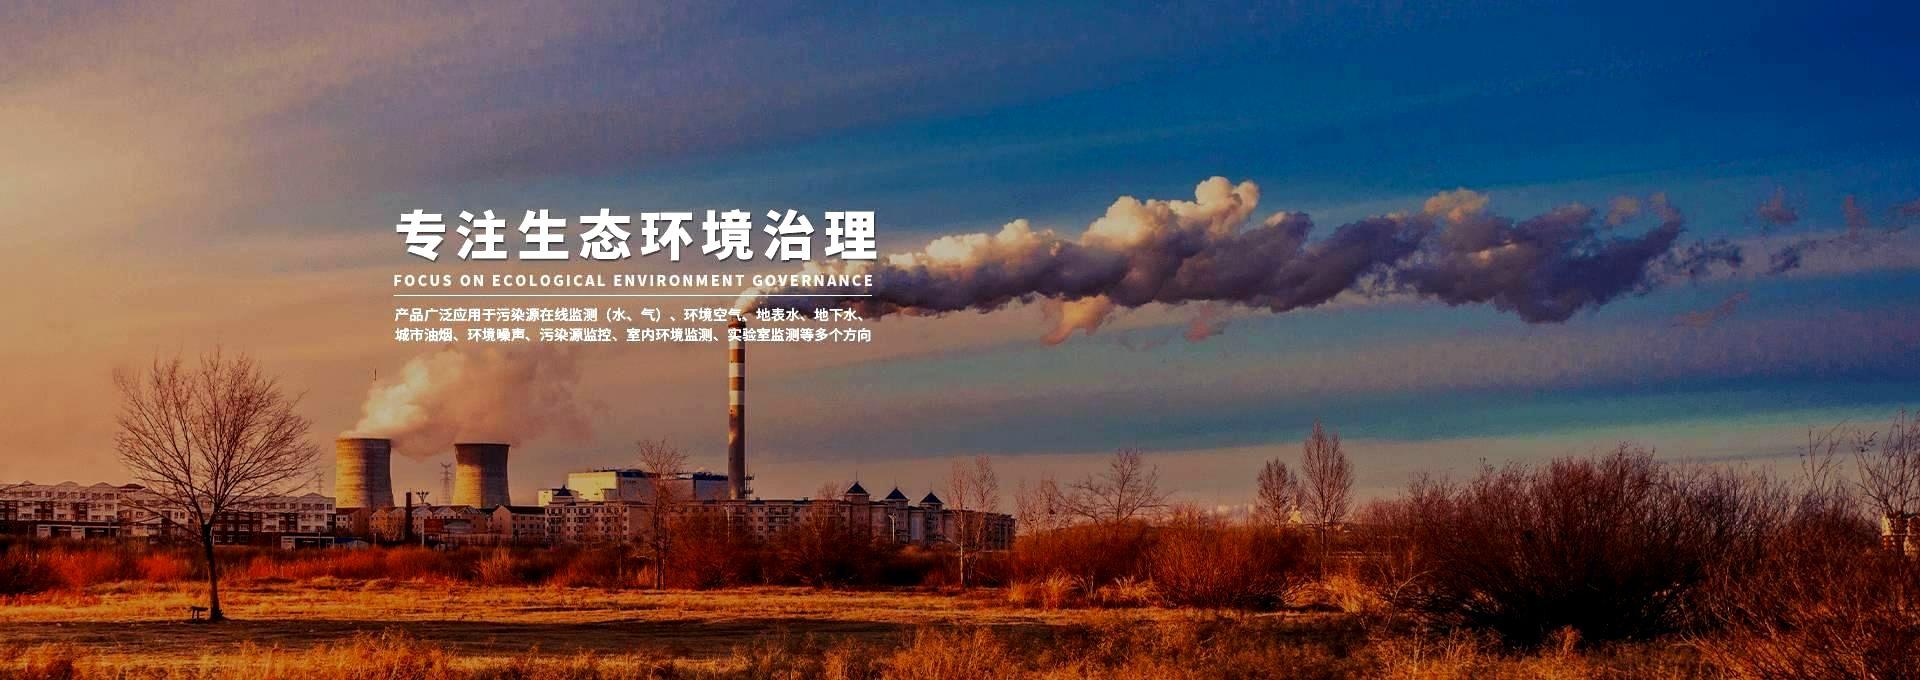 武汉J9九游会环保科技发展有限公司